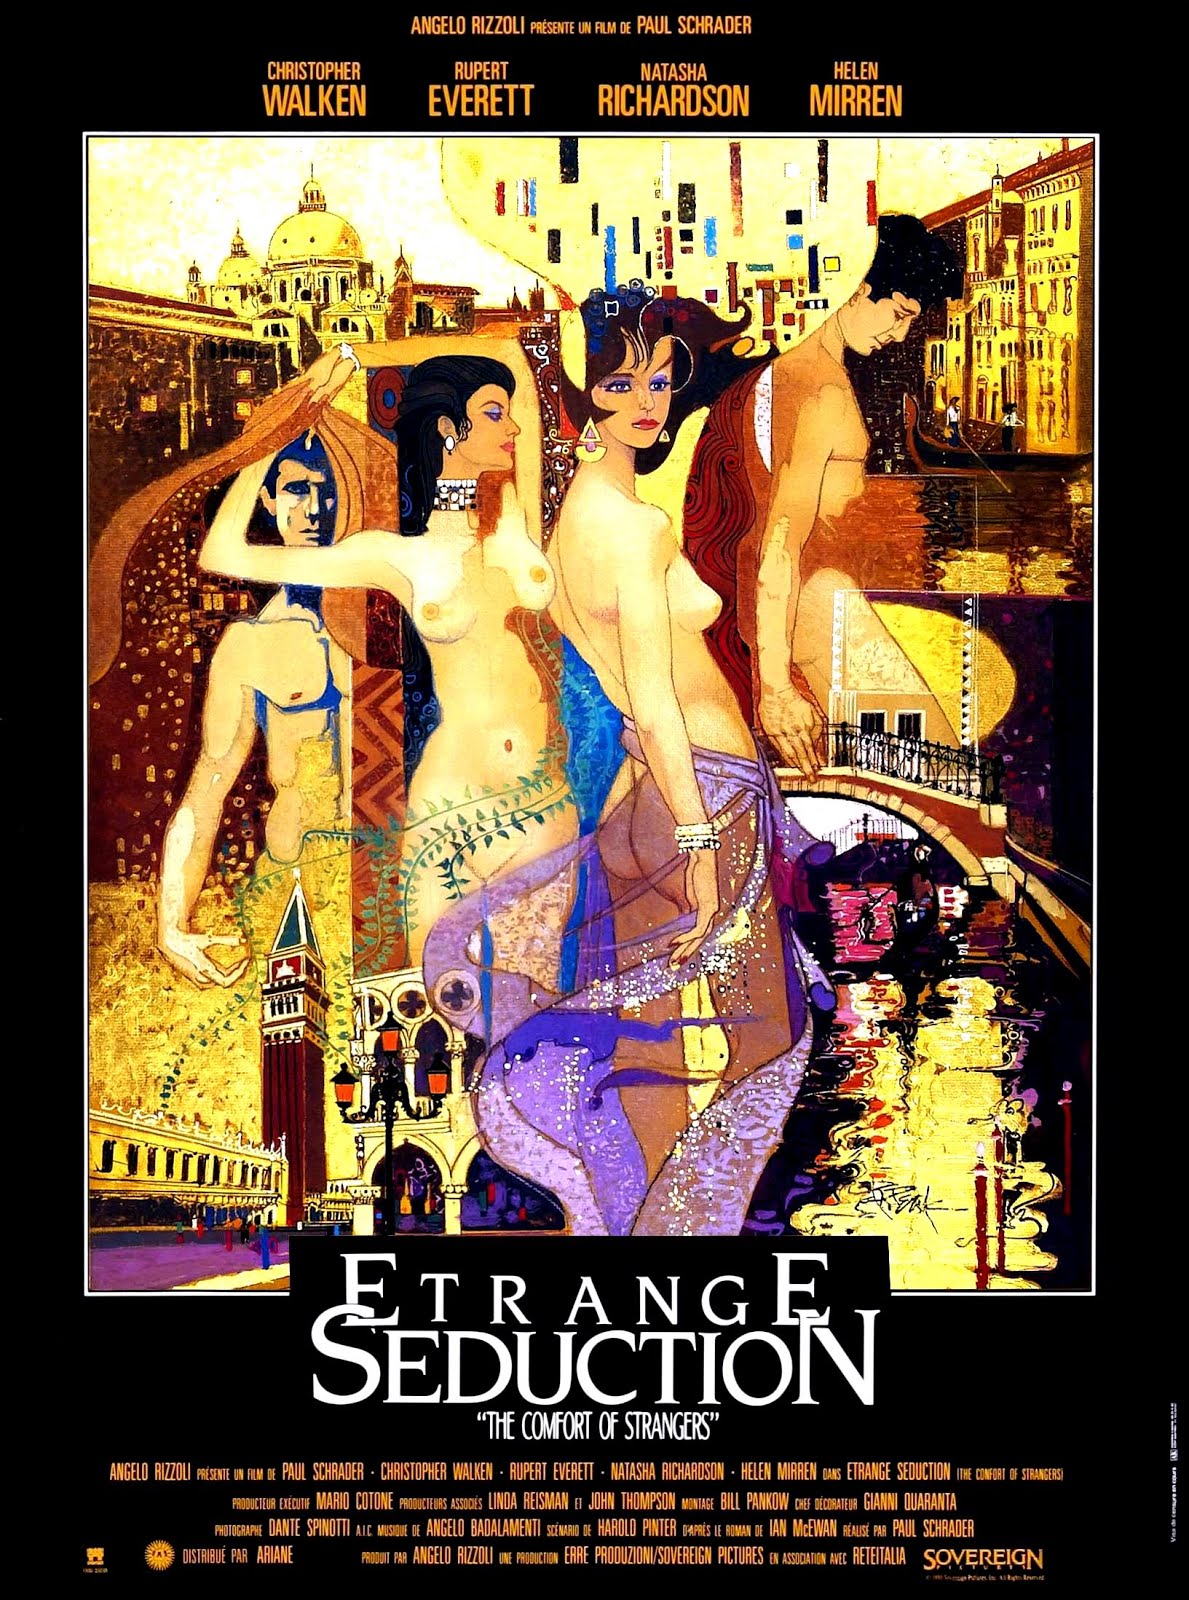 Etrange séduction (1989) Paul Schrader - The comfort of strangers (25.09.1989 / 01.12.1989)